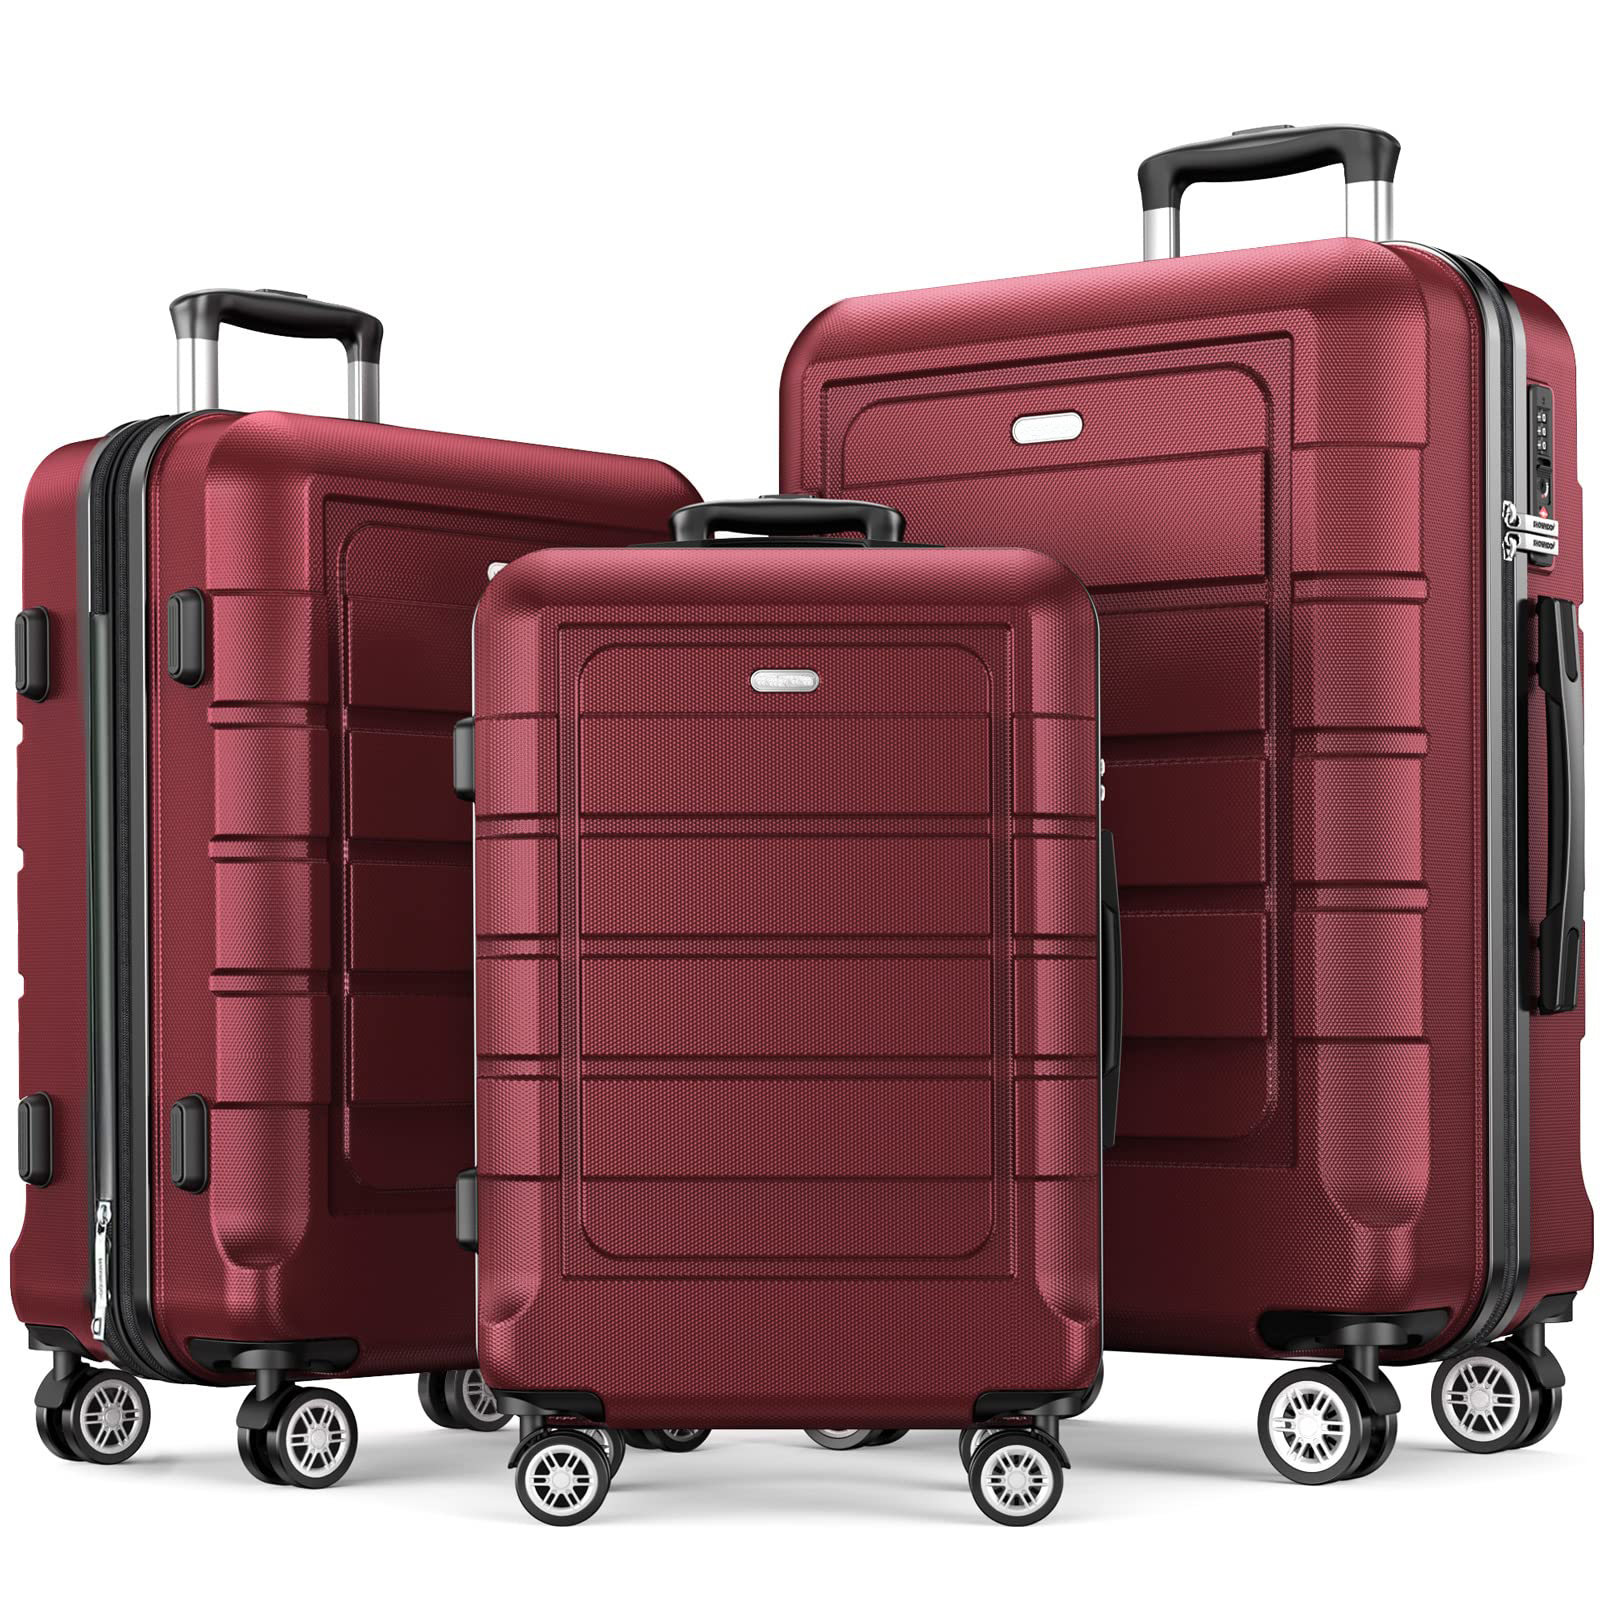 Η κόκκινη βαλίτσα ABS είναι ανθεκτική και διαθέτει κυλιόμενη βαλίτσα με ρόδες